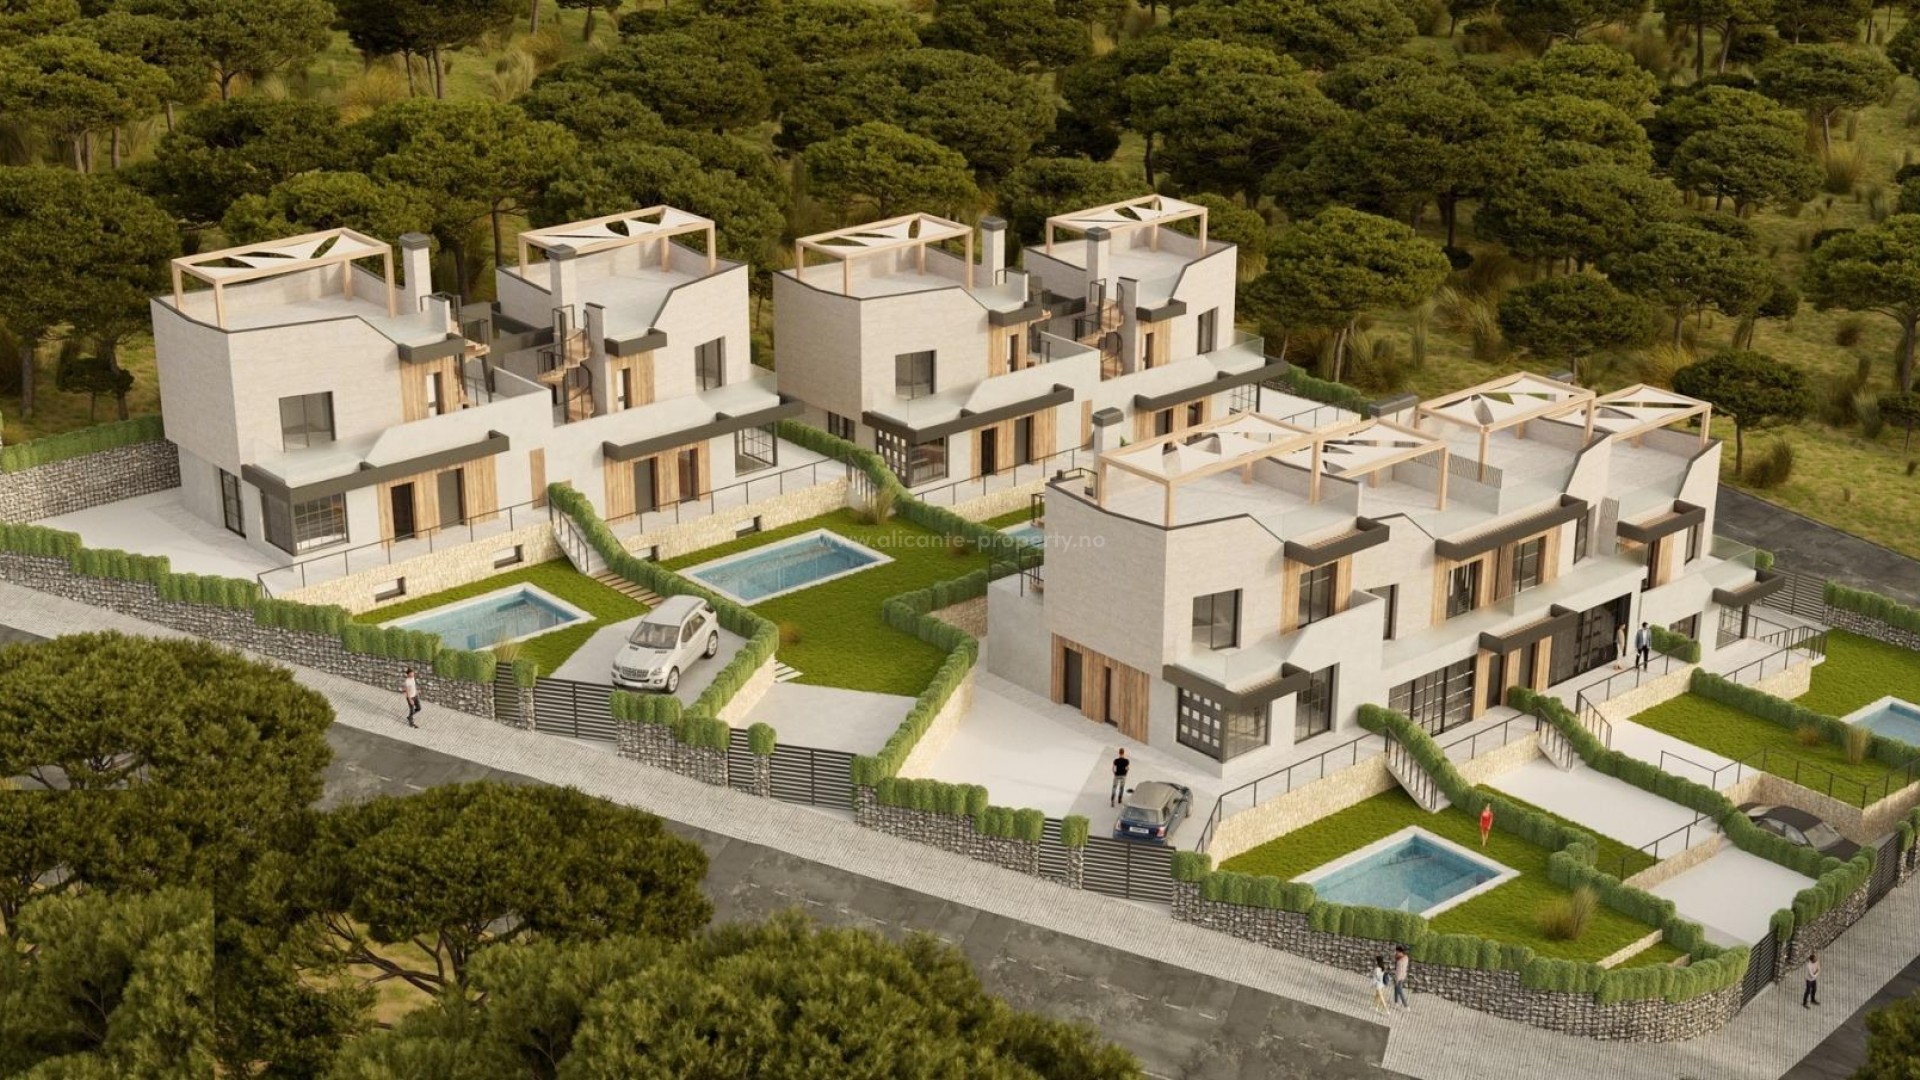 Tomannsbolig/hus i Polop, Alicante-provinsen, 3 soverom, 2 bad, solarium, romslige terrasser og stor halvkjeller med vinduer, basseng